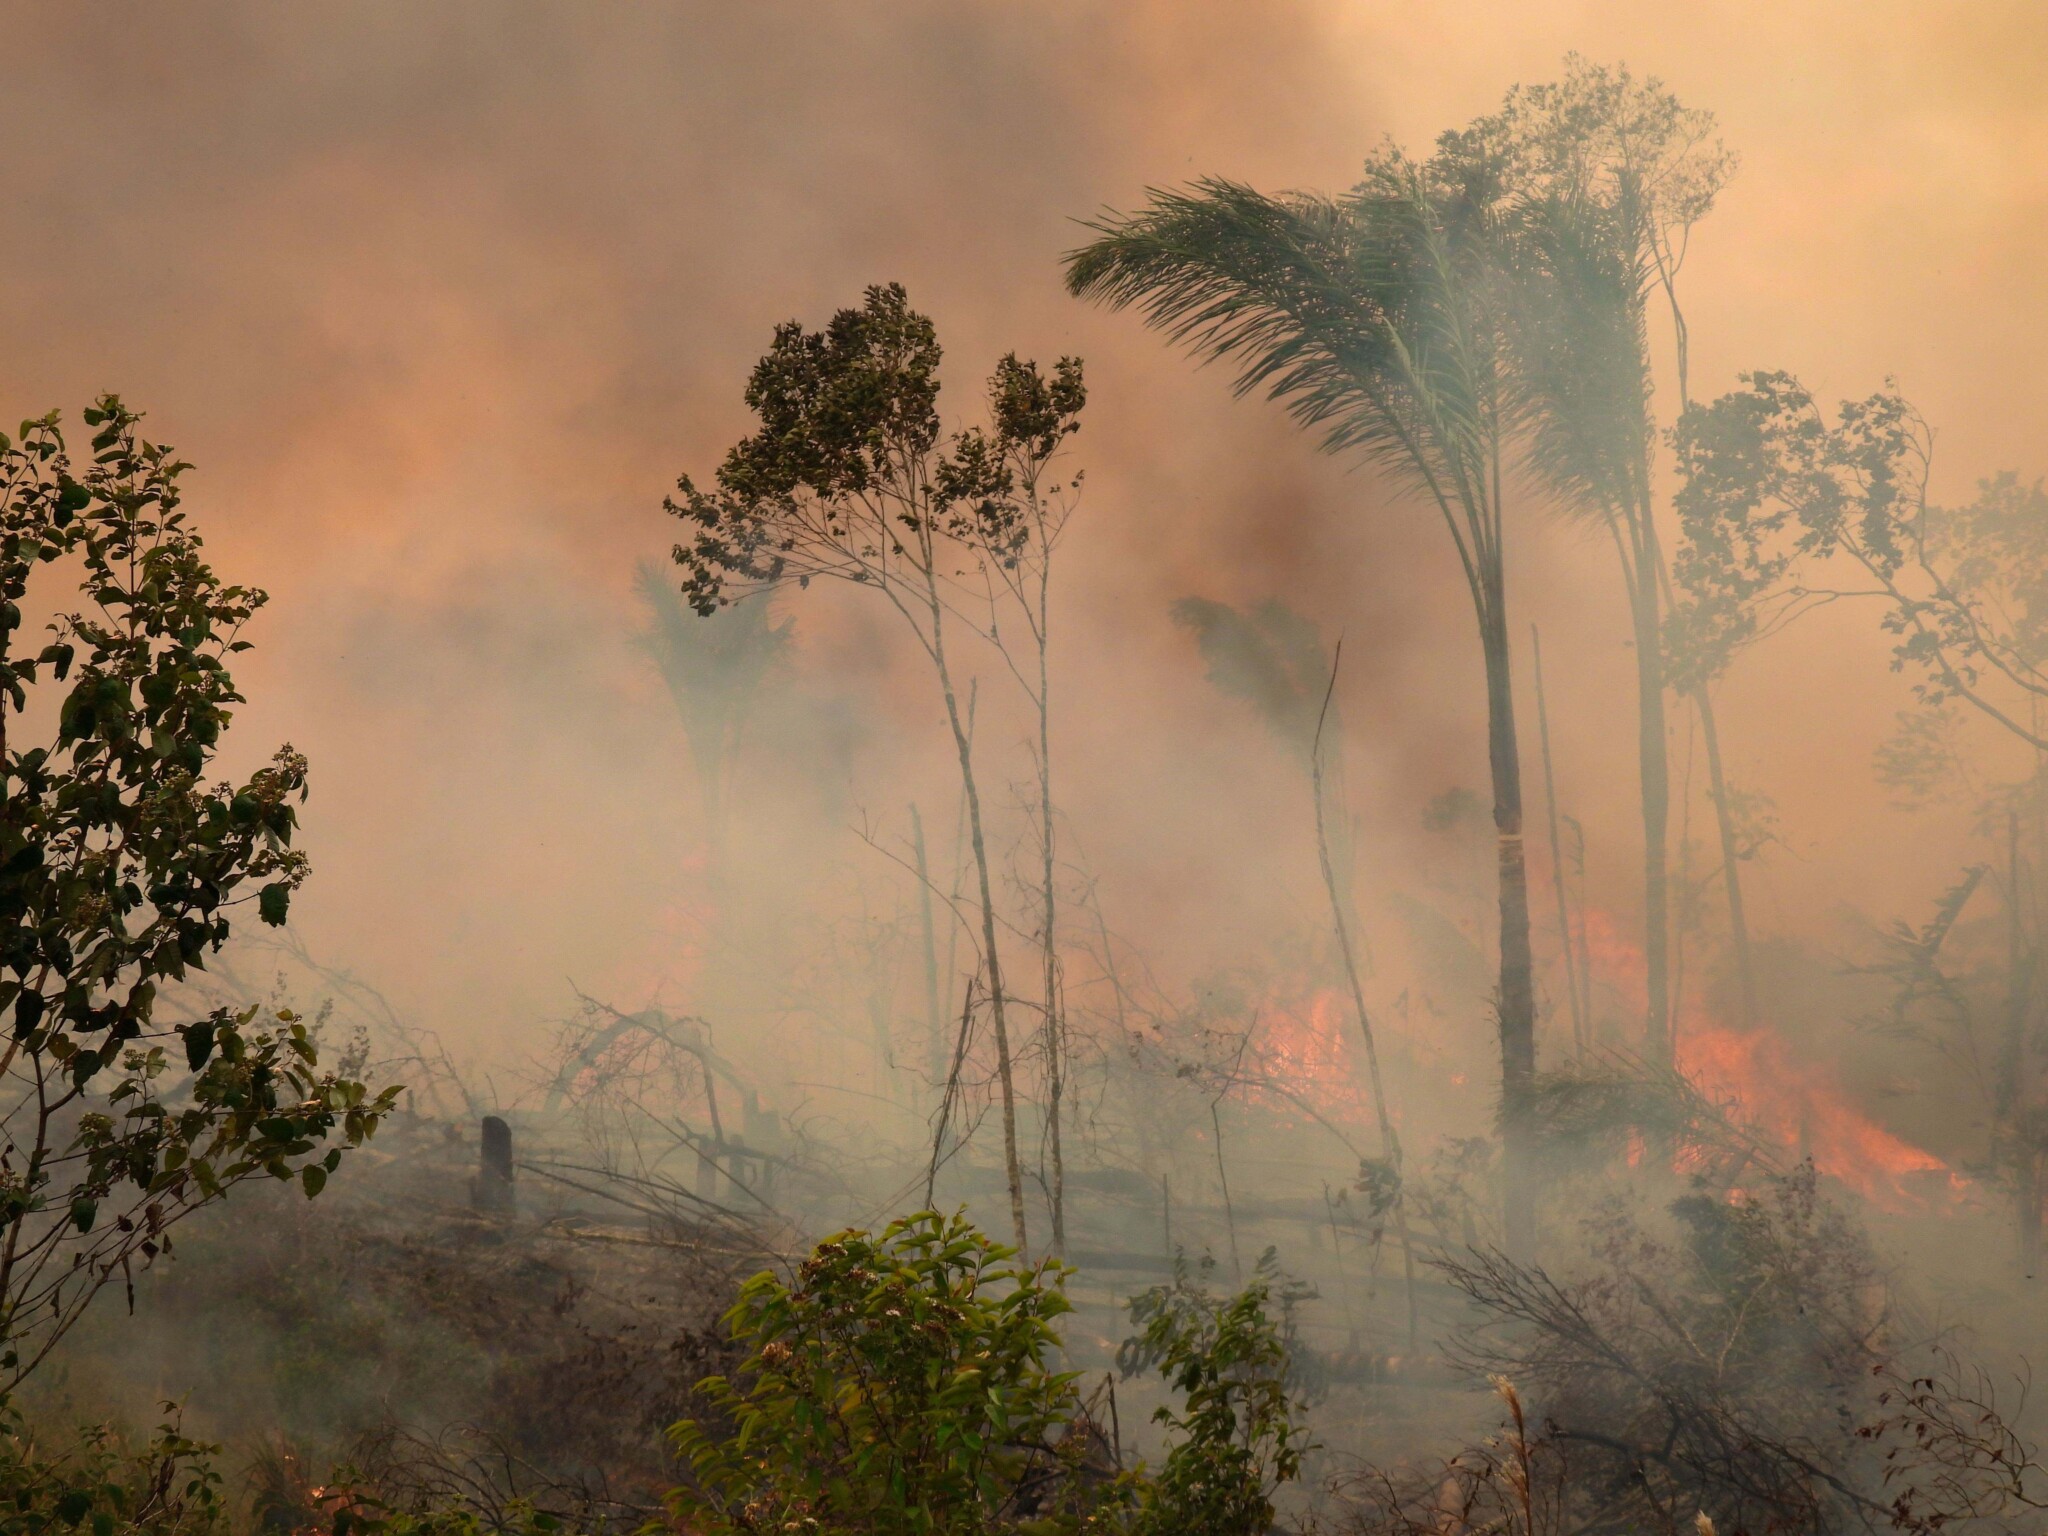 Incendio en bosque de Cartagena del Chairá, Caquetá, donde se monitoreaba un nido de águila harpía. ©Proyecto Soy Harpía Amazonia